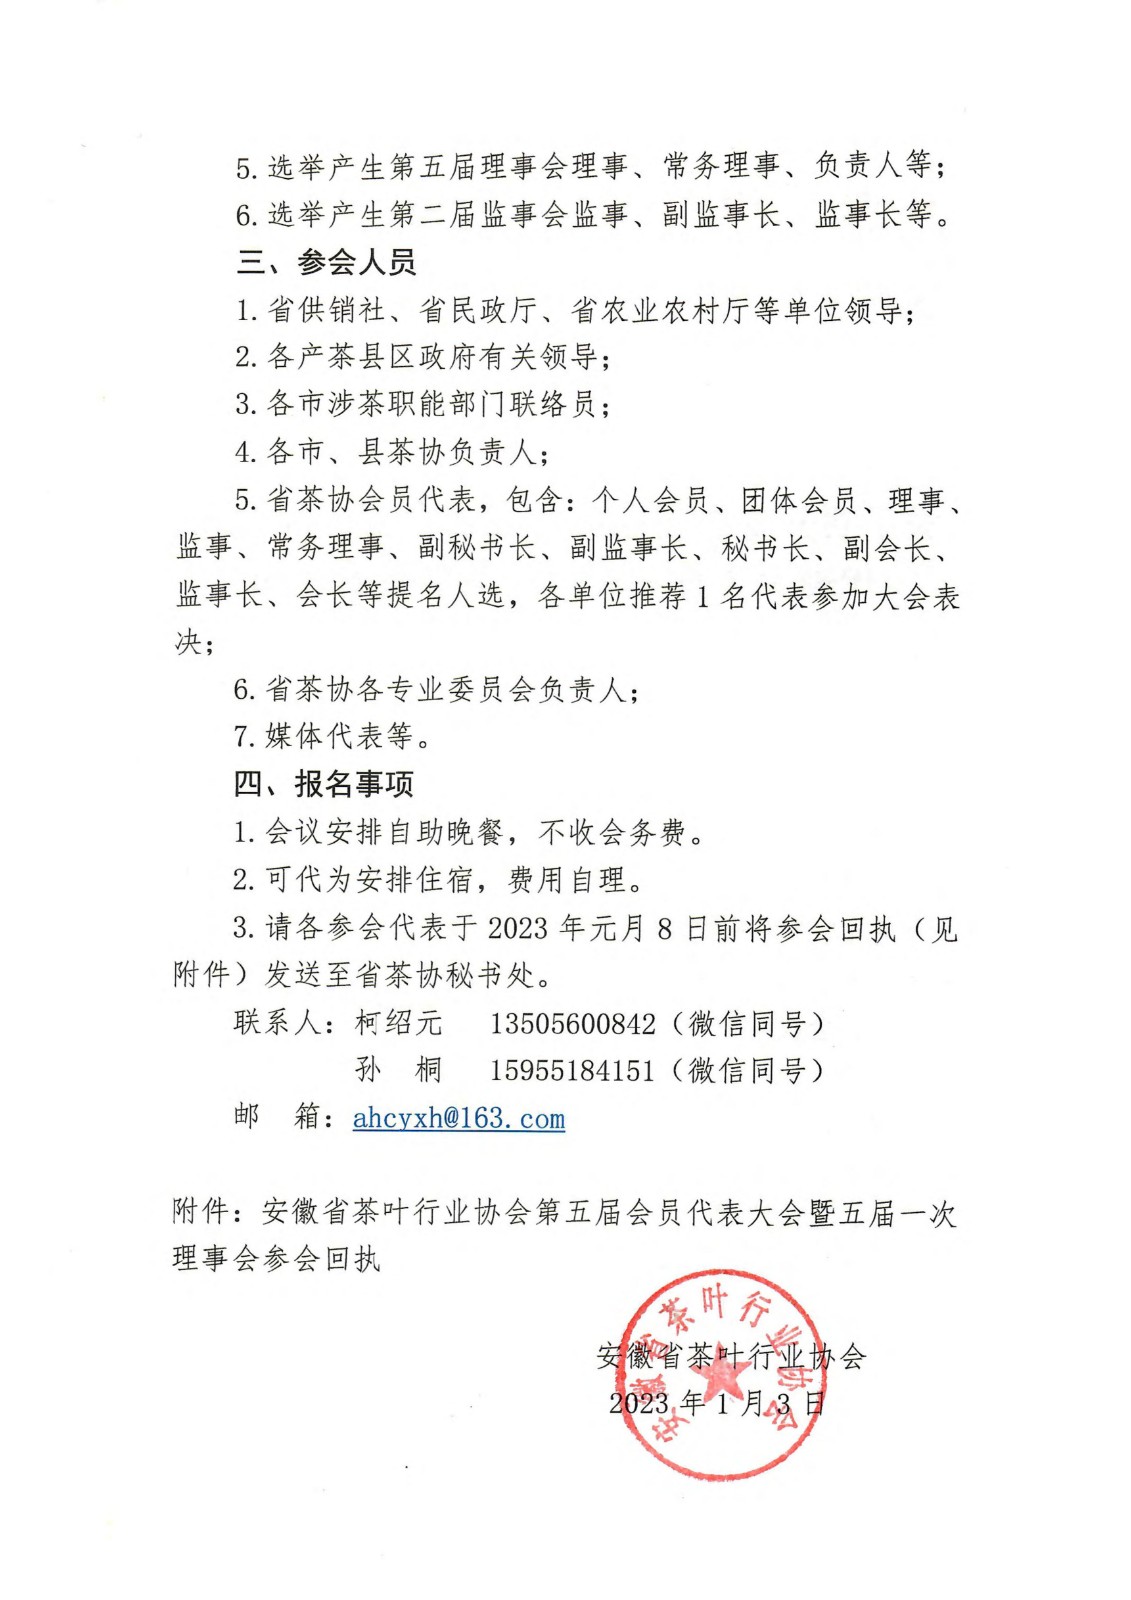 关于召开安徽省茶叶行业协会第五届会员代表大会暨五届一次理事会的通知(3)_01.jpg